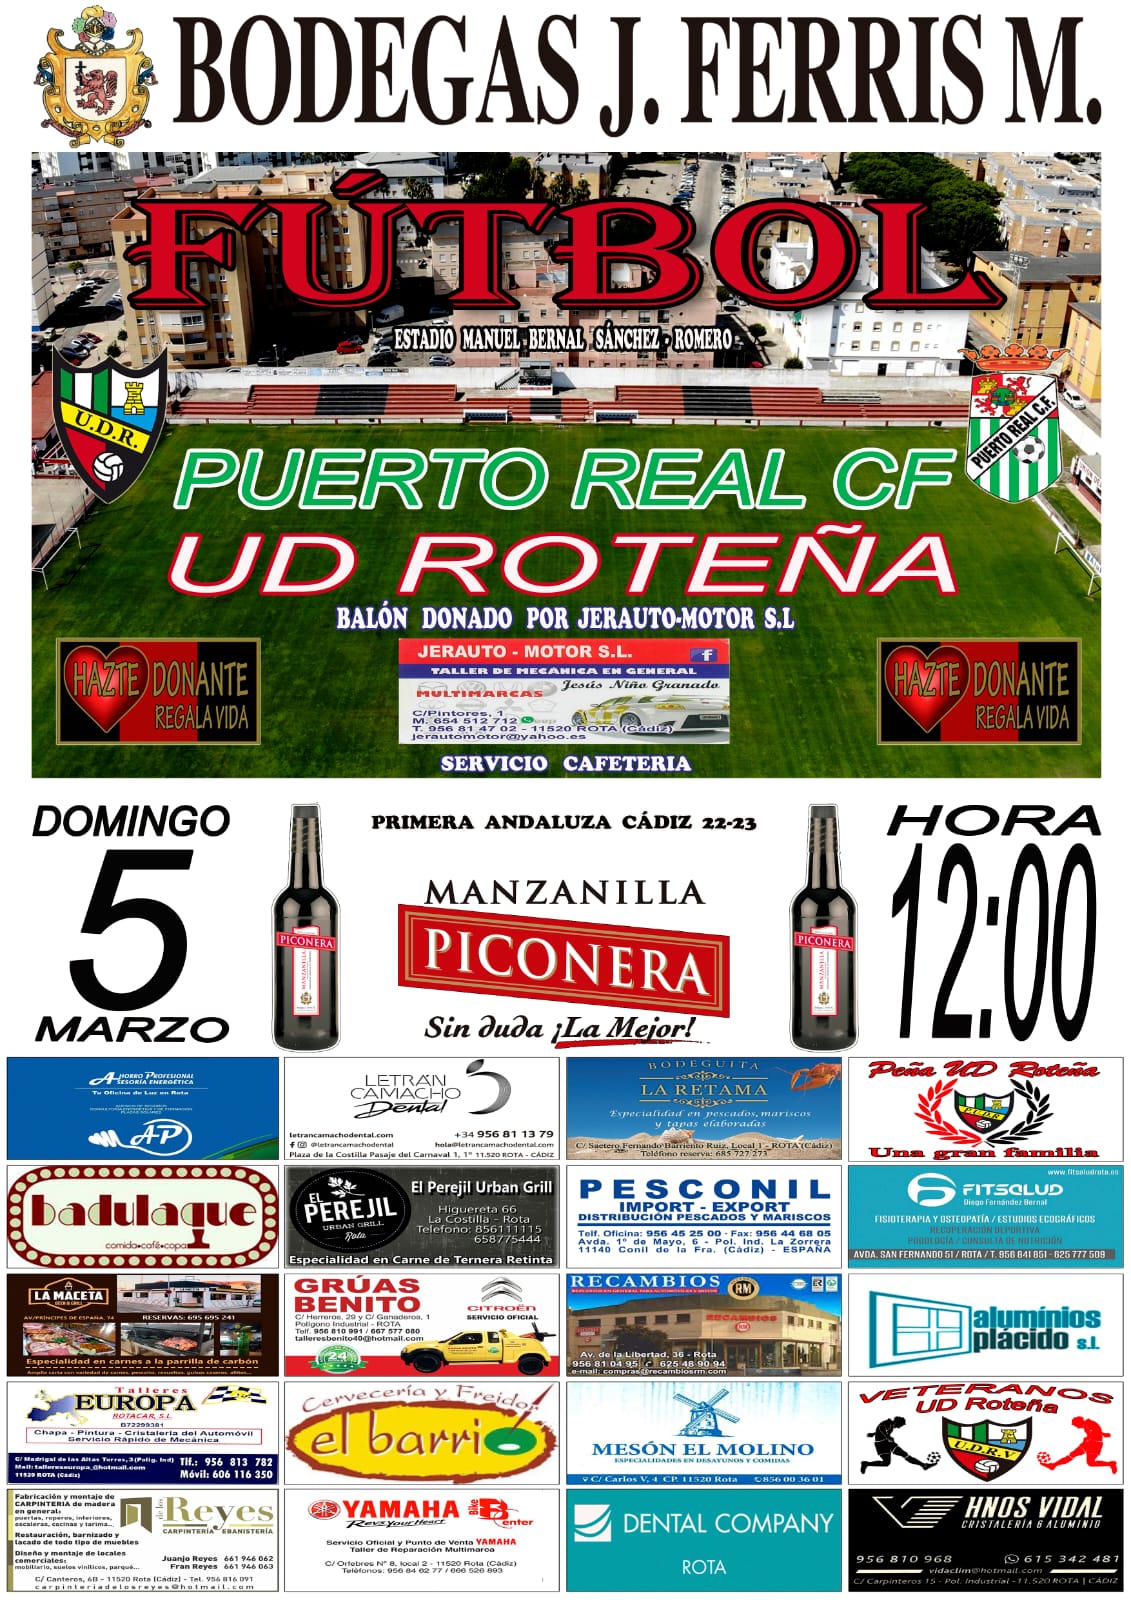 Previa UD Roteña – Puerto Real CF 